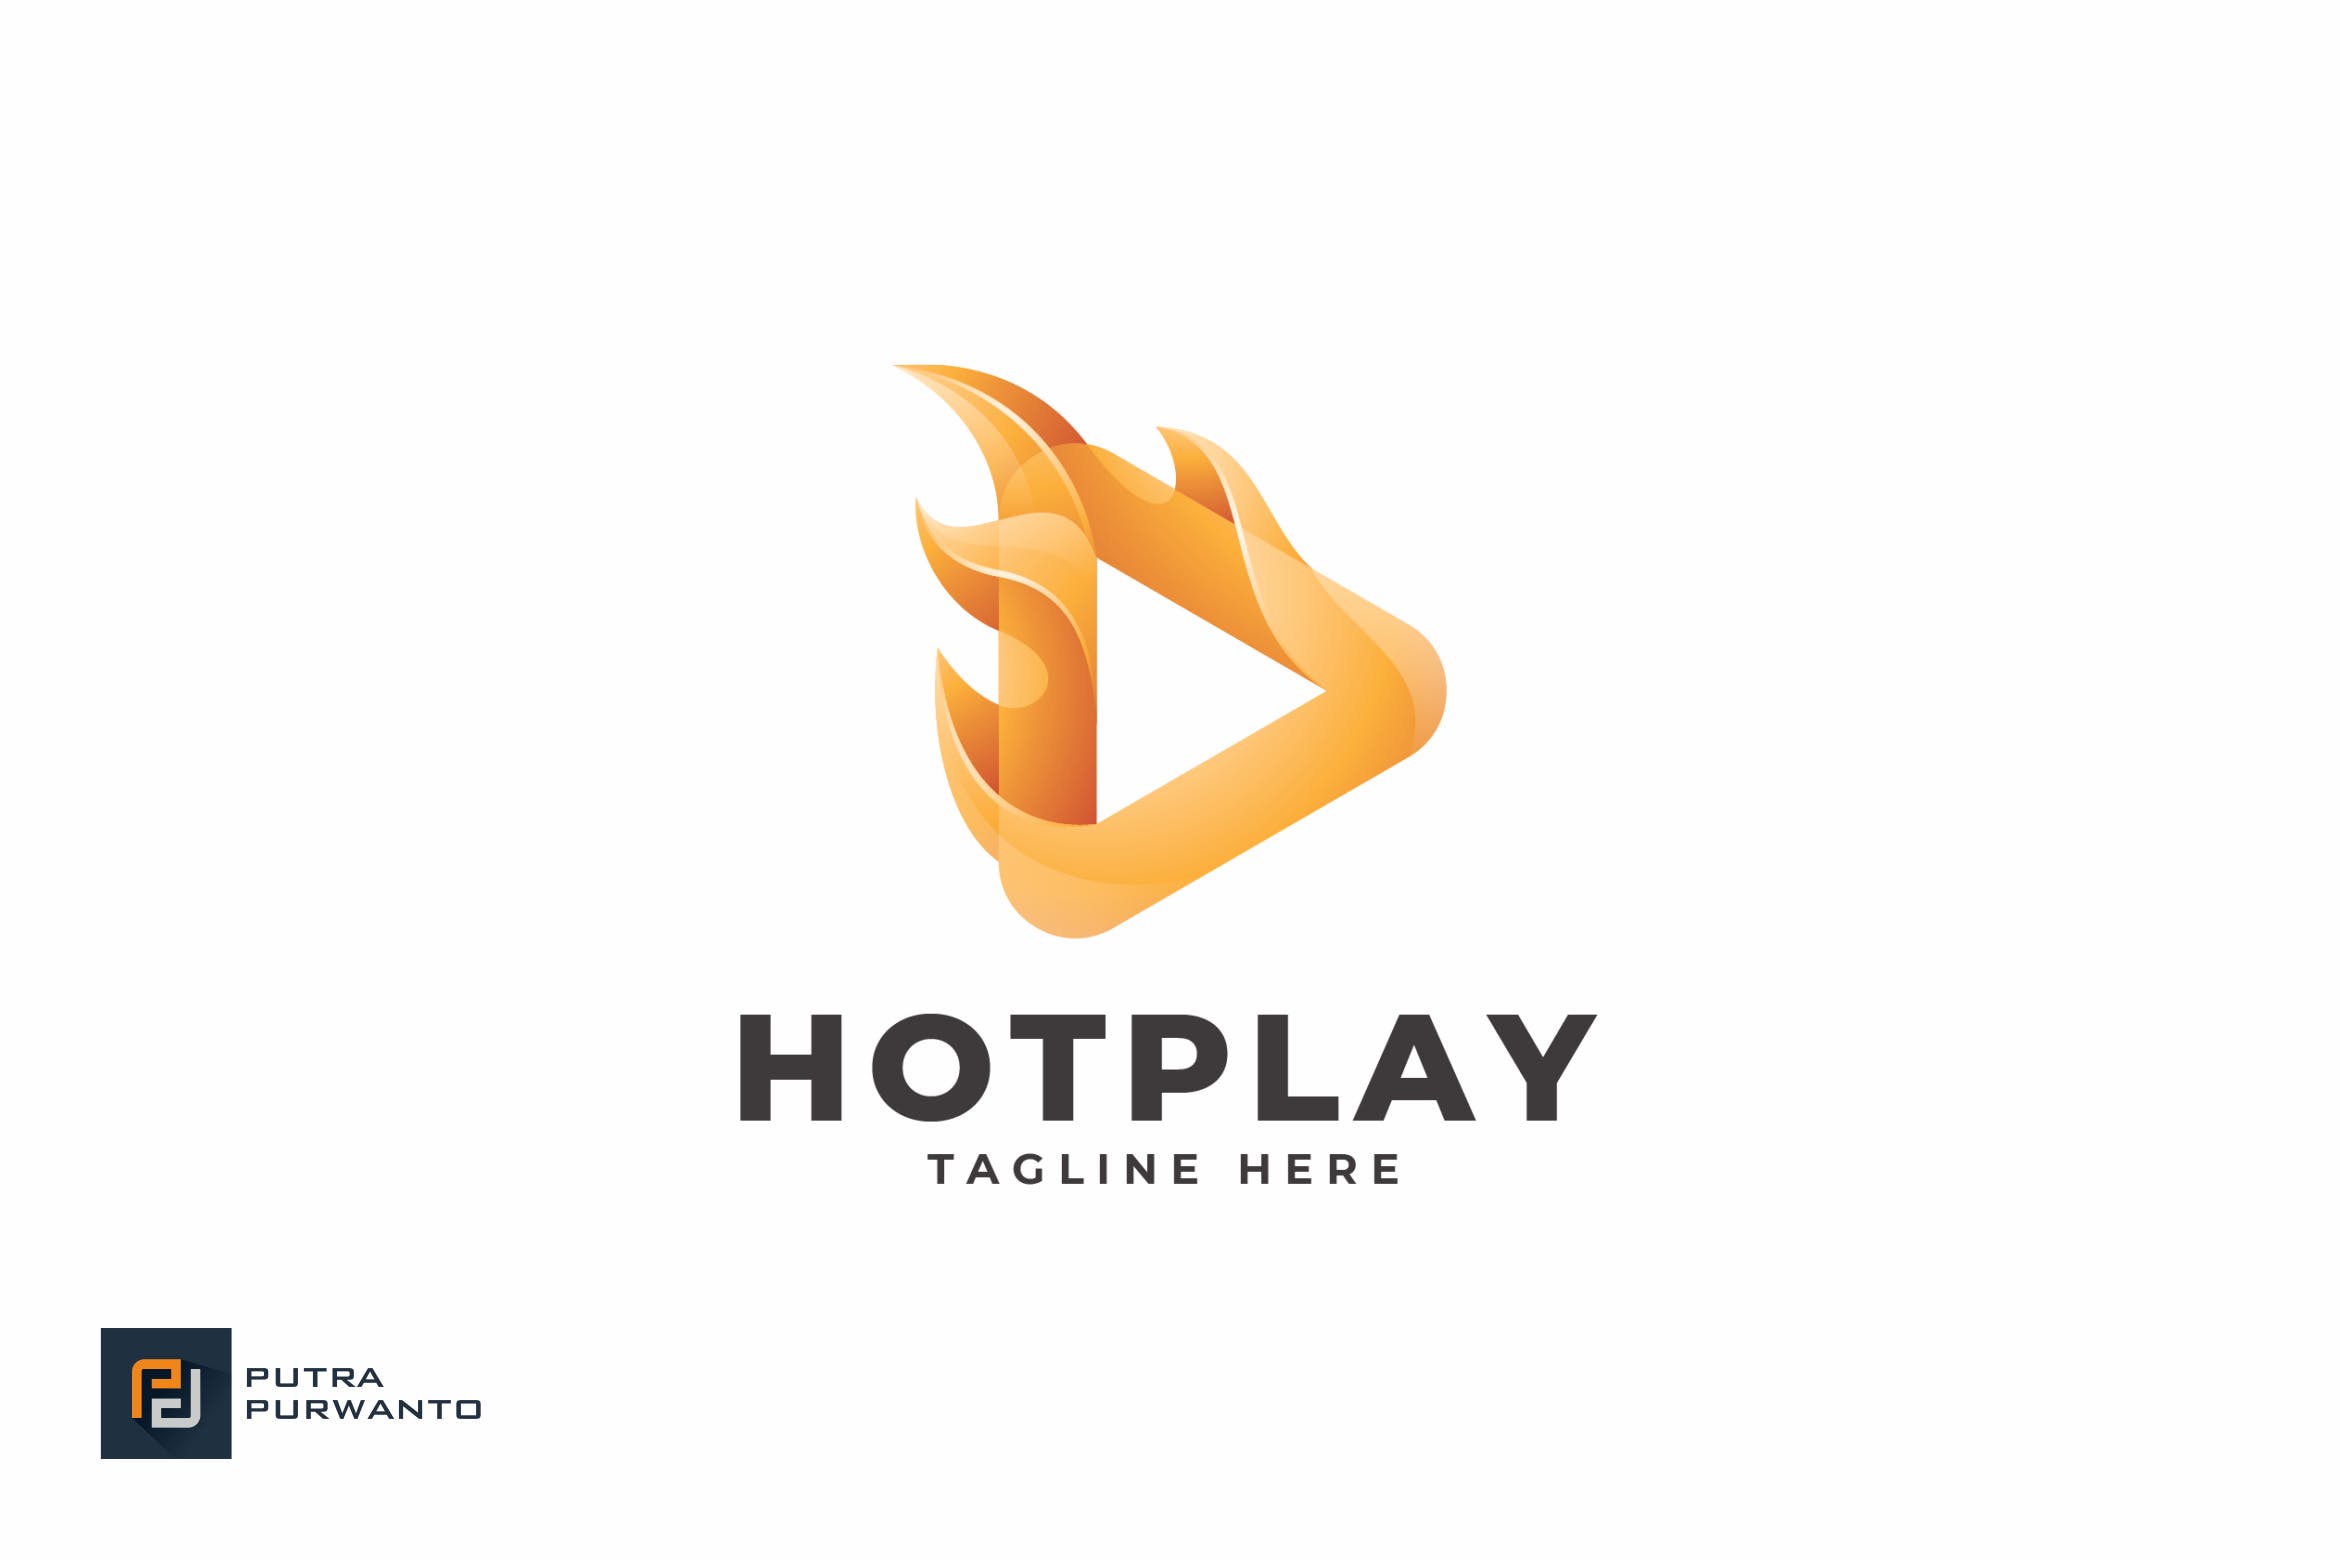 播放器/多媒体品牌Logo设计蚂蚁素材精选模板 Hot Play – Logo Template插图